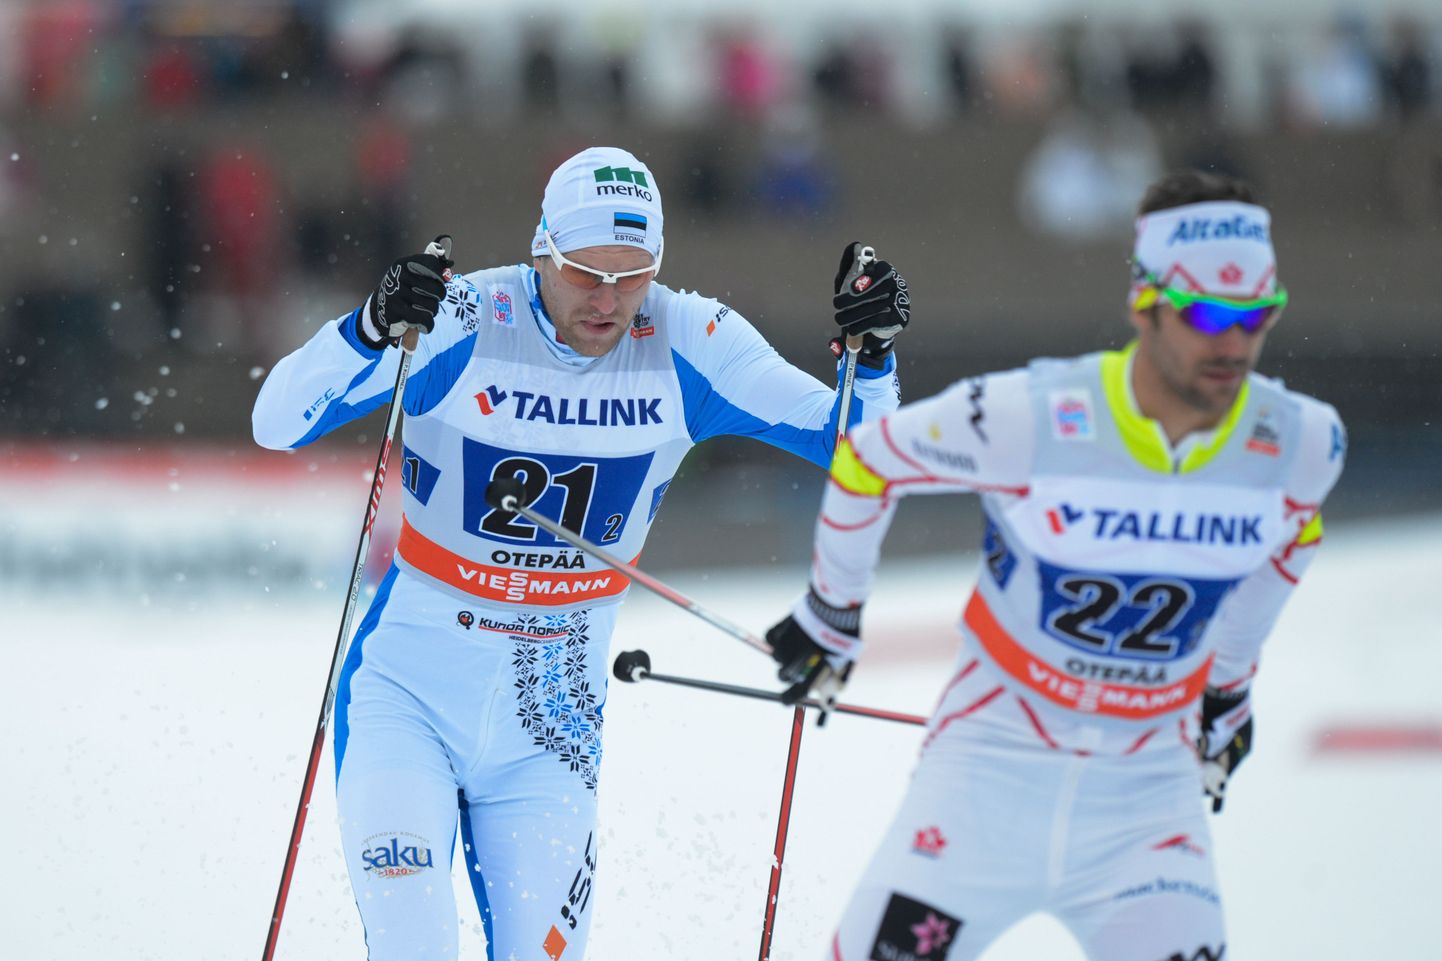 Eesti suusatajate parimaks tulemuseks jäi finaalikoht meeskondlikus sprindis, mille Raido Ränkel ja Peeter Kümmel lõpetasid kümnendana.